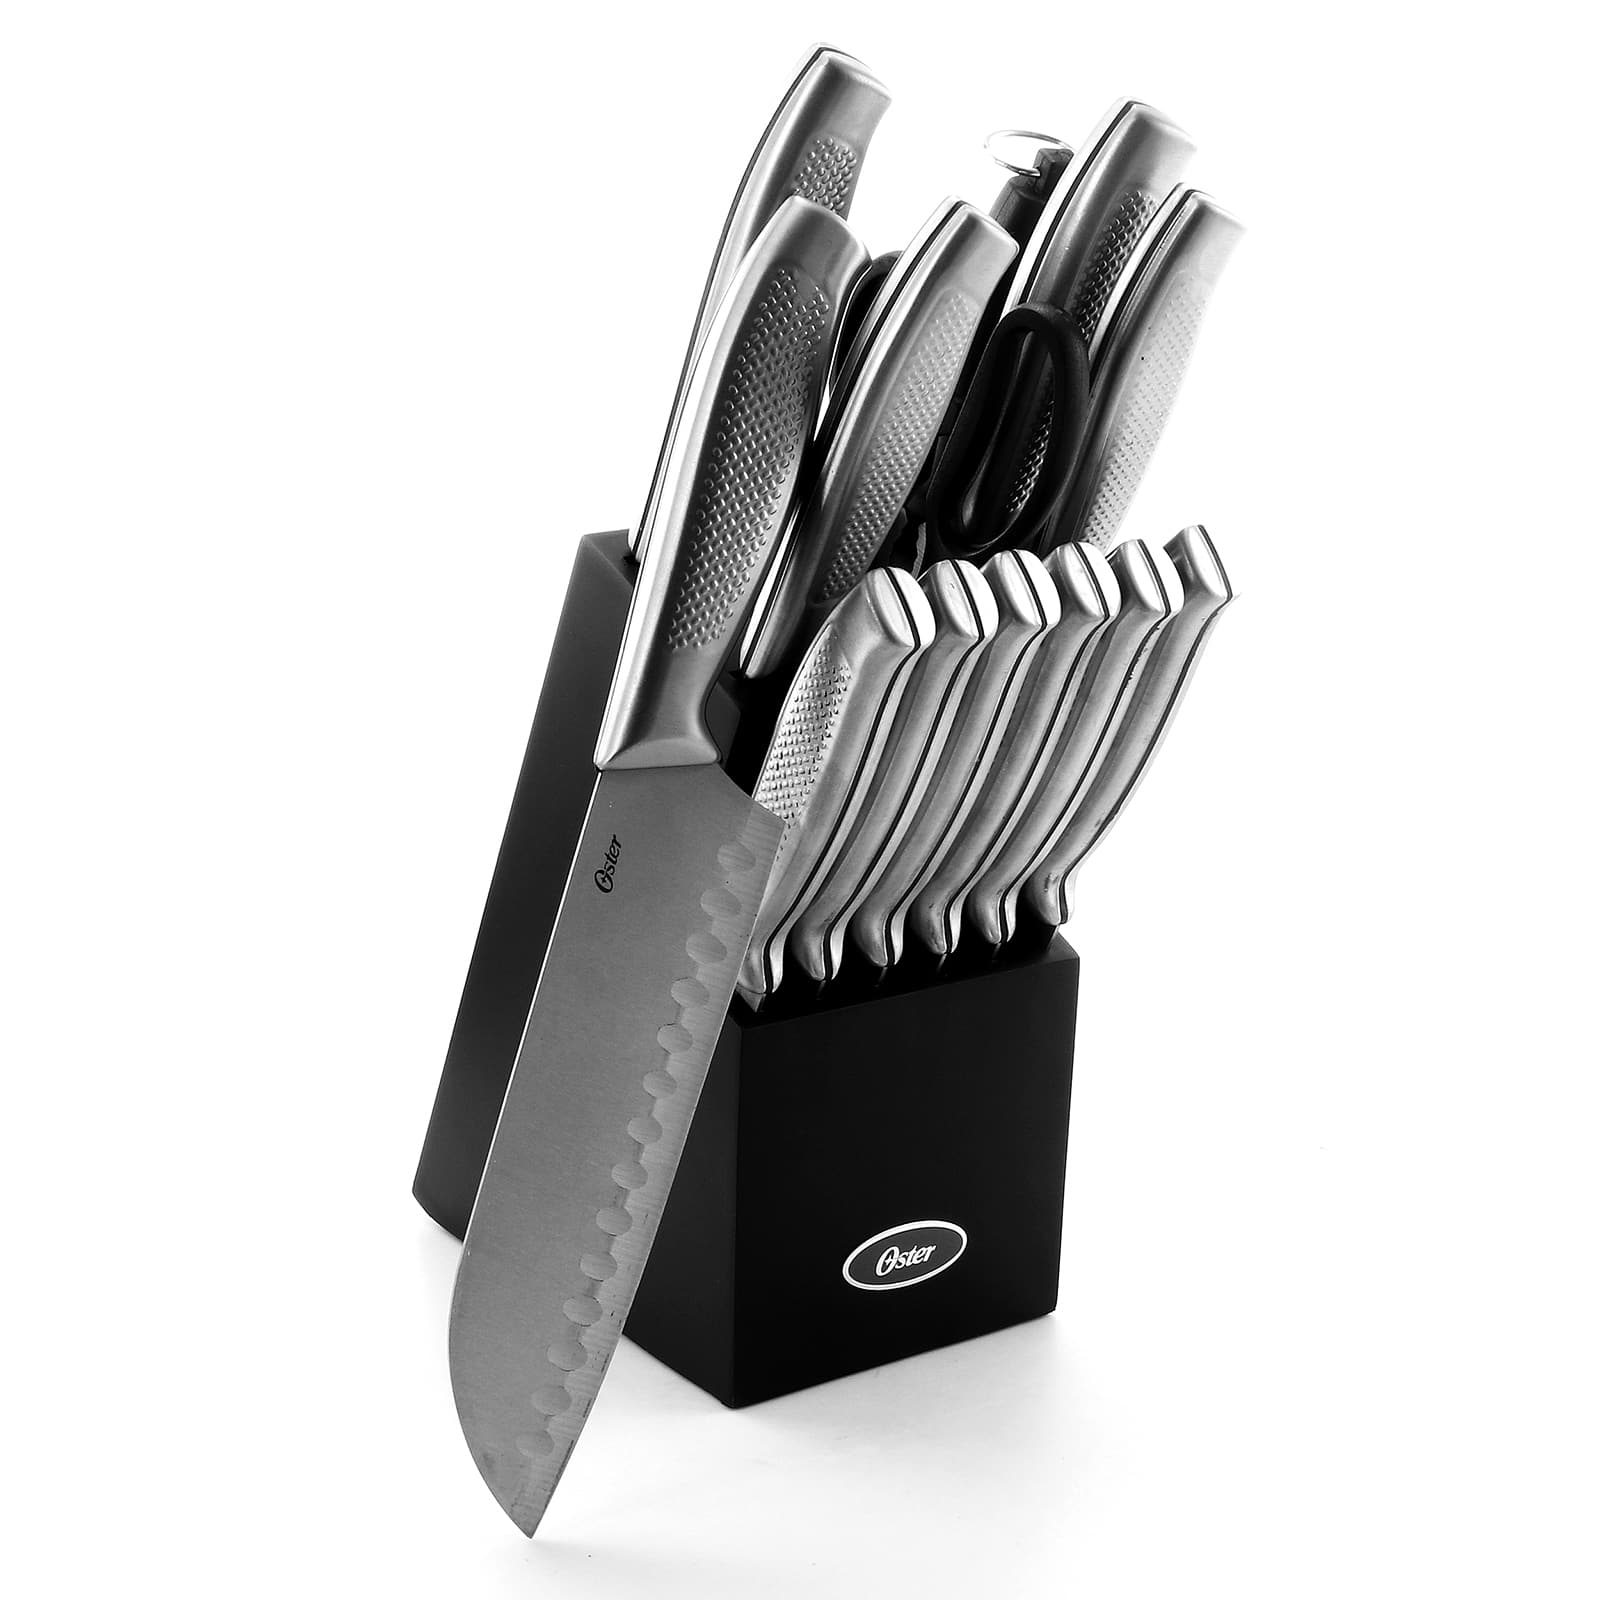 Martha Stewart Cream Stainless Steel 14 Piece Cutlery & Knife Block Set